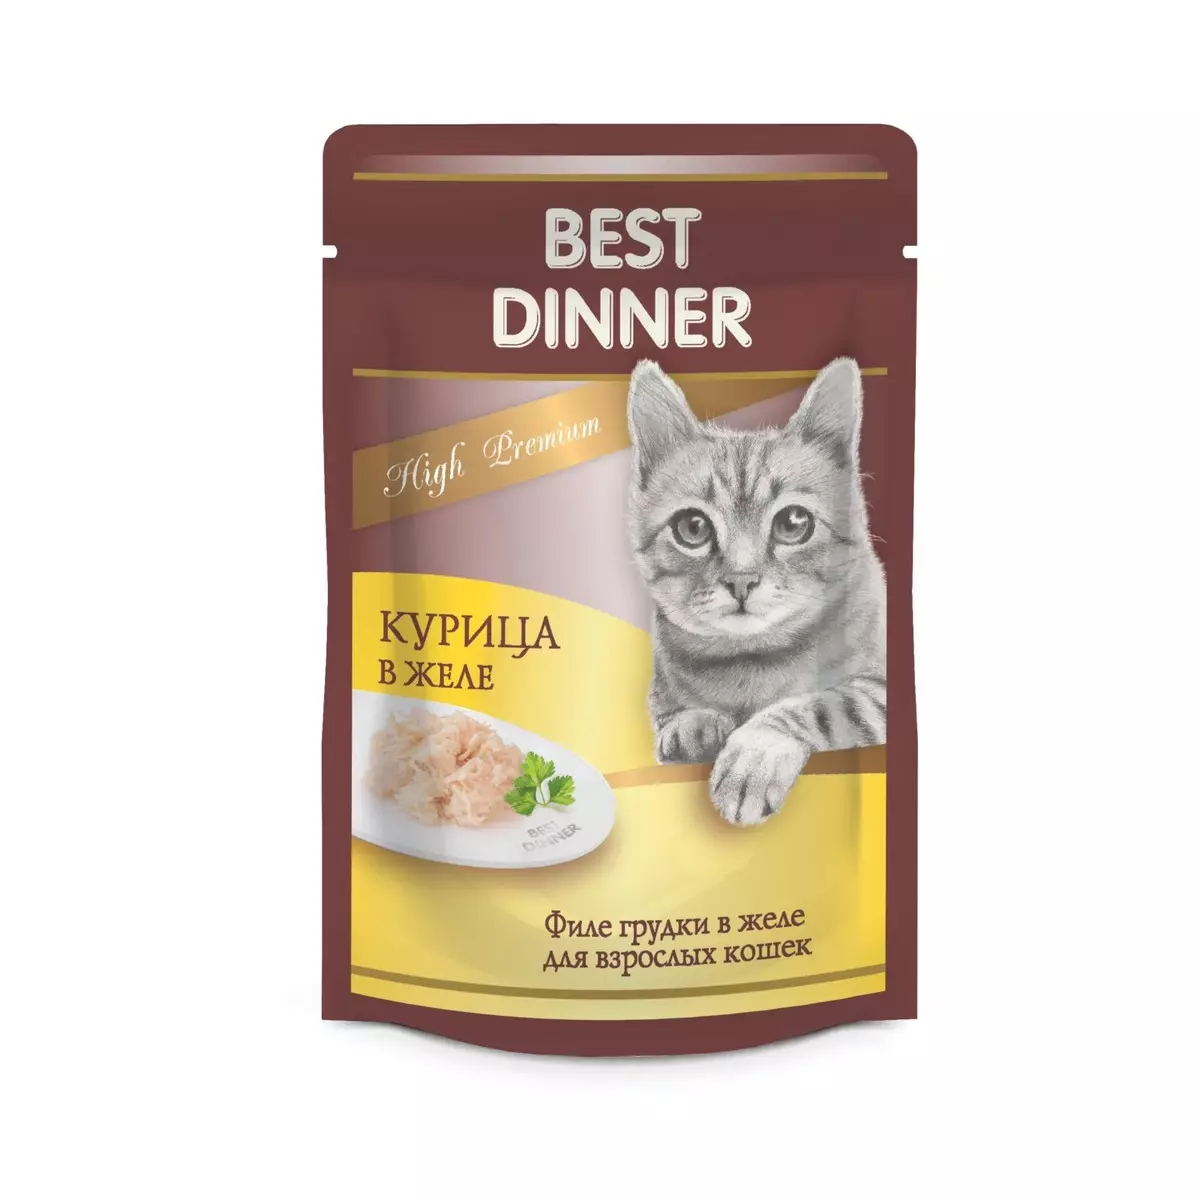 बिल्ली खाना सबसे अच्छा रात का खाना: बिल्ली के बच्चे और वयस्क बिल्लियों के लिए निर्माता से शुष्क और गीले भोजन, समीक्षा समीक्षा 22735_8